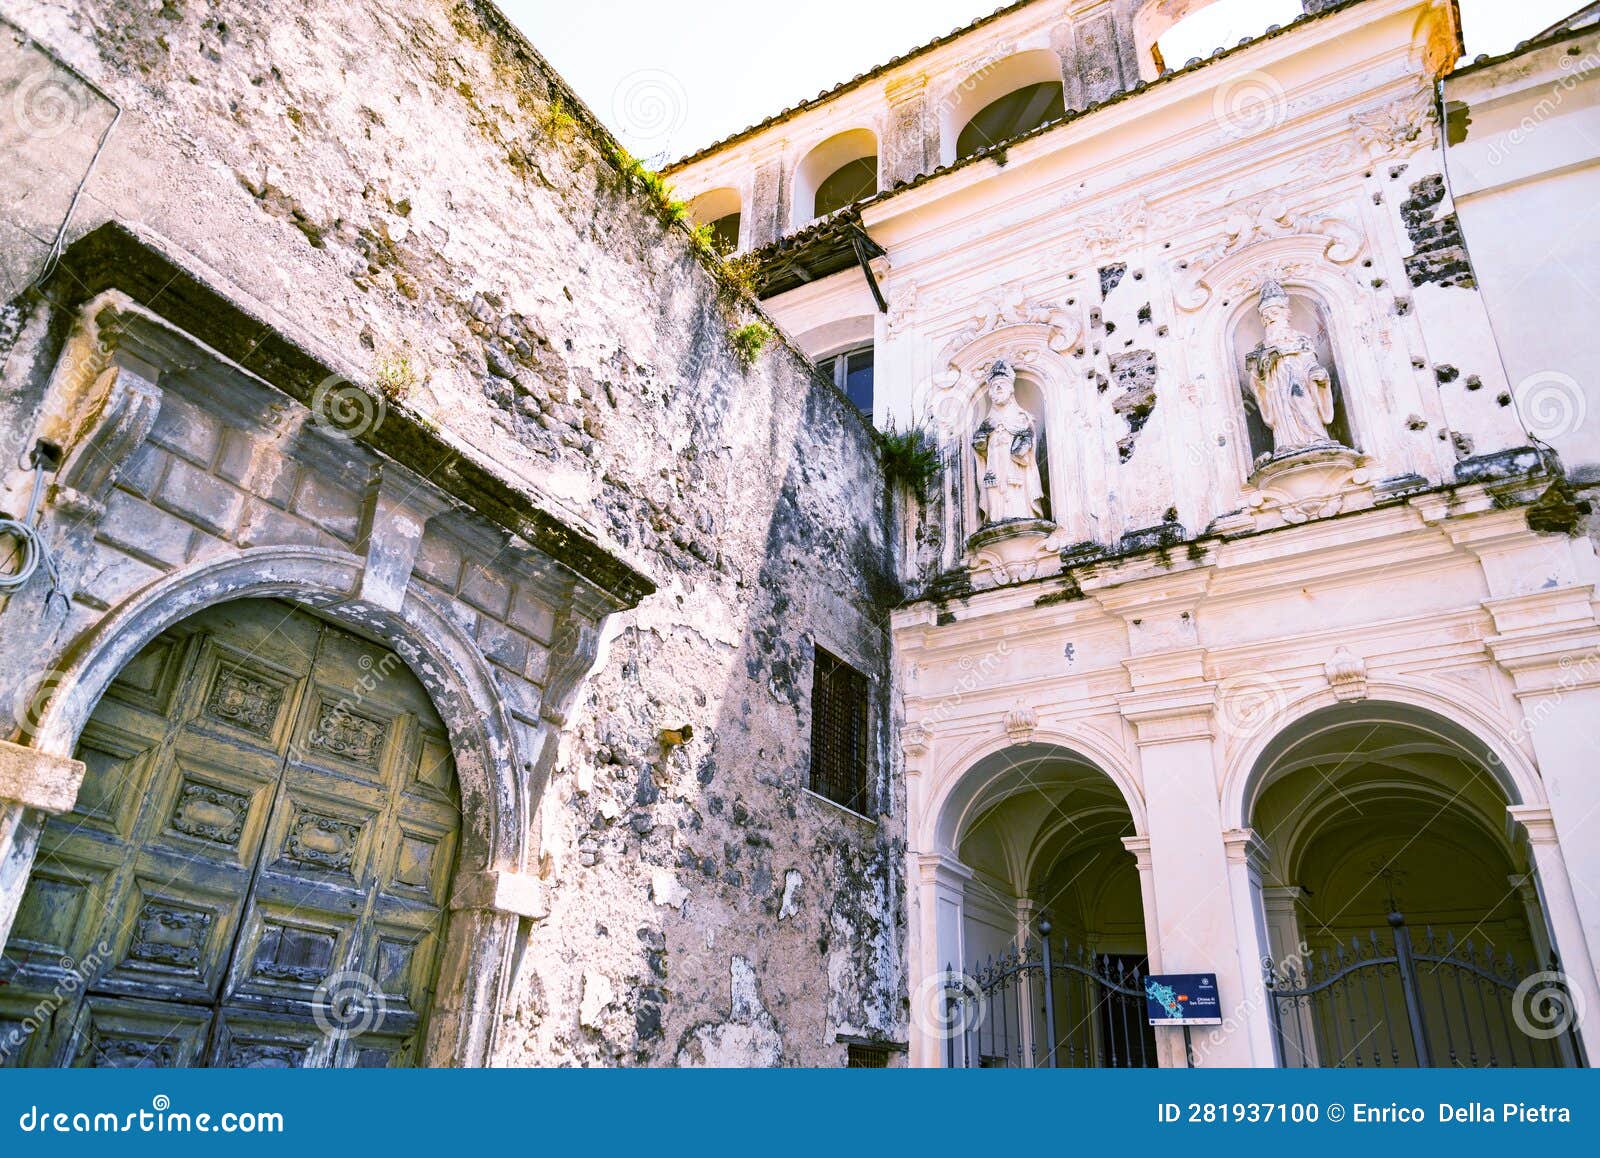 sessa aurunca, campania. the facade and the entrance of santo stefano church, built in the 13th century